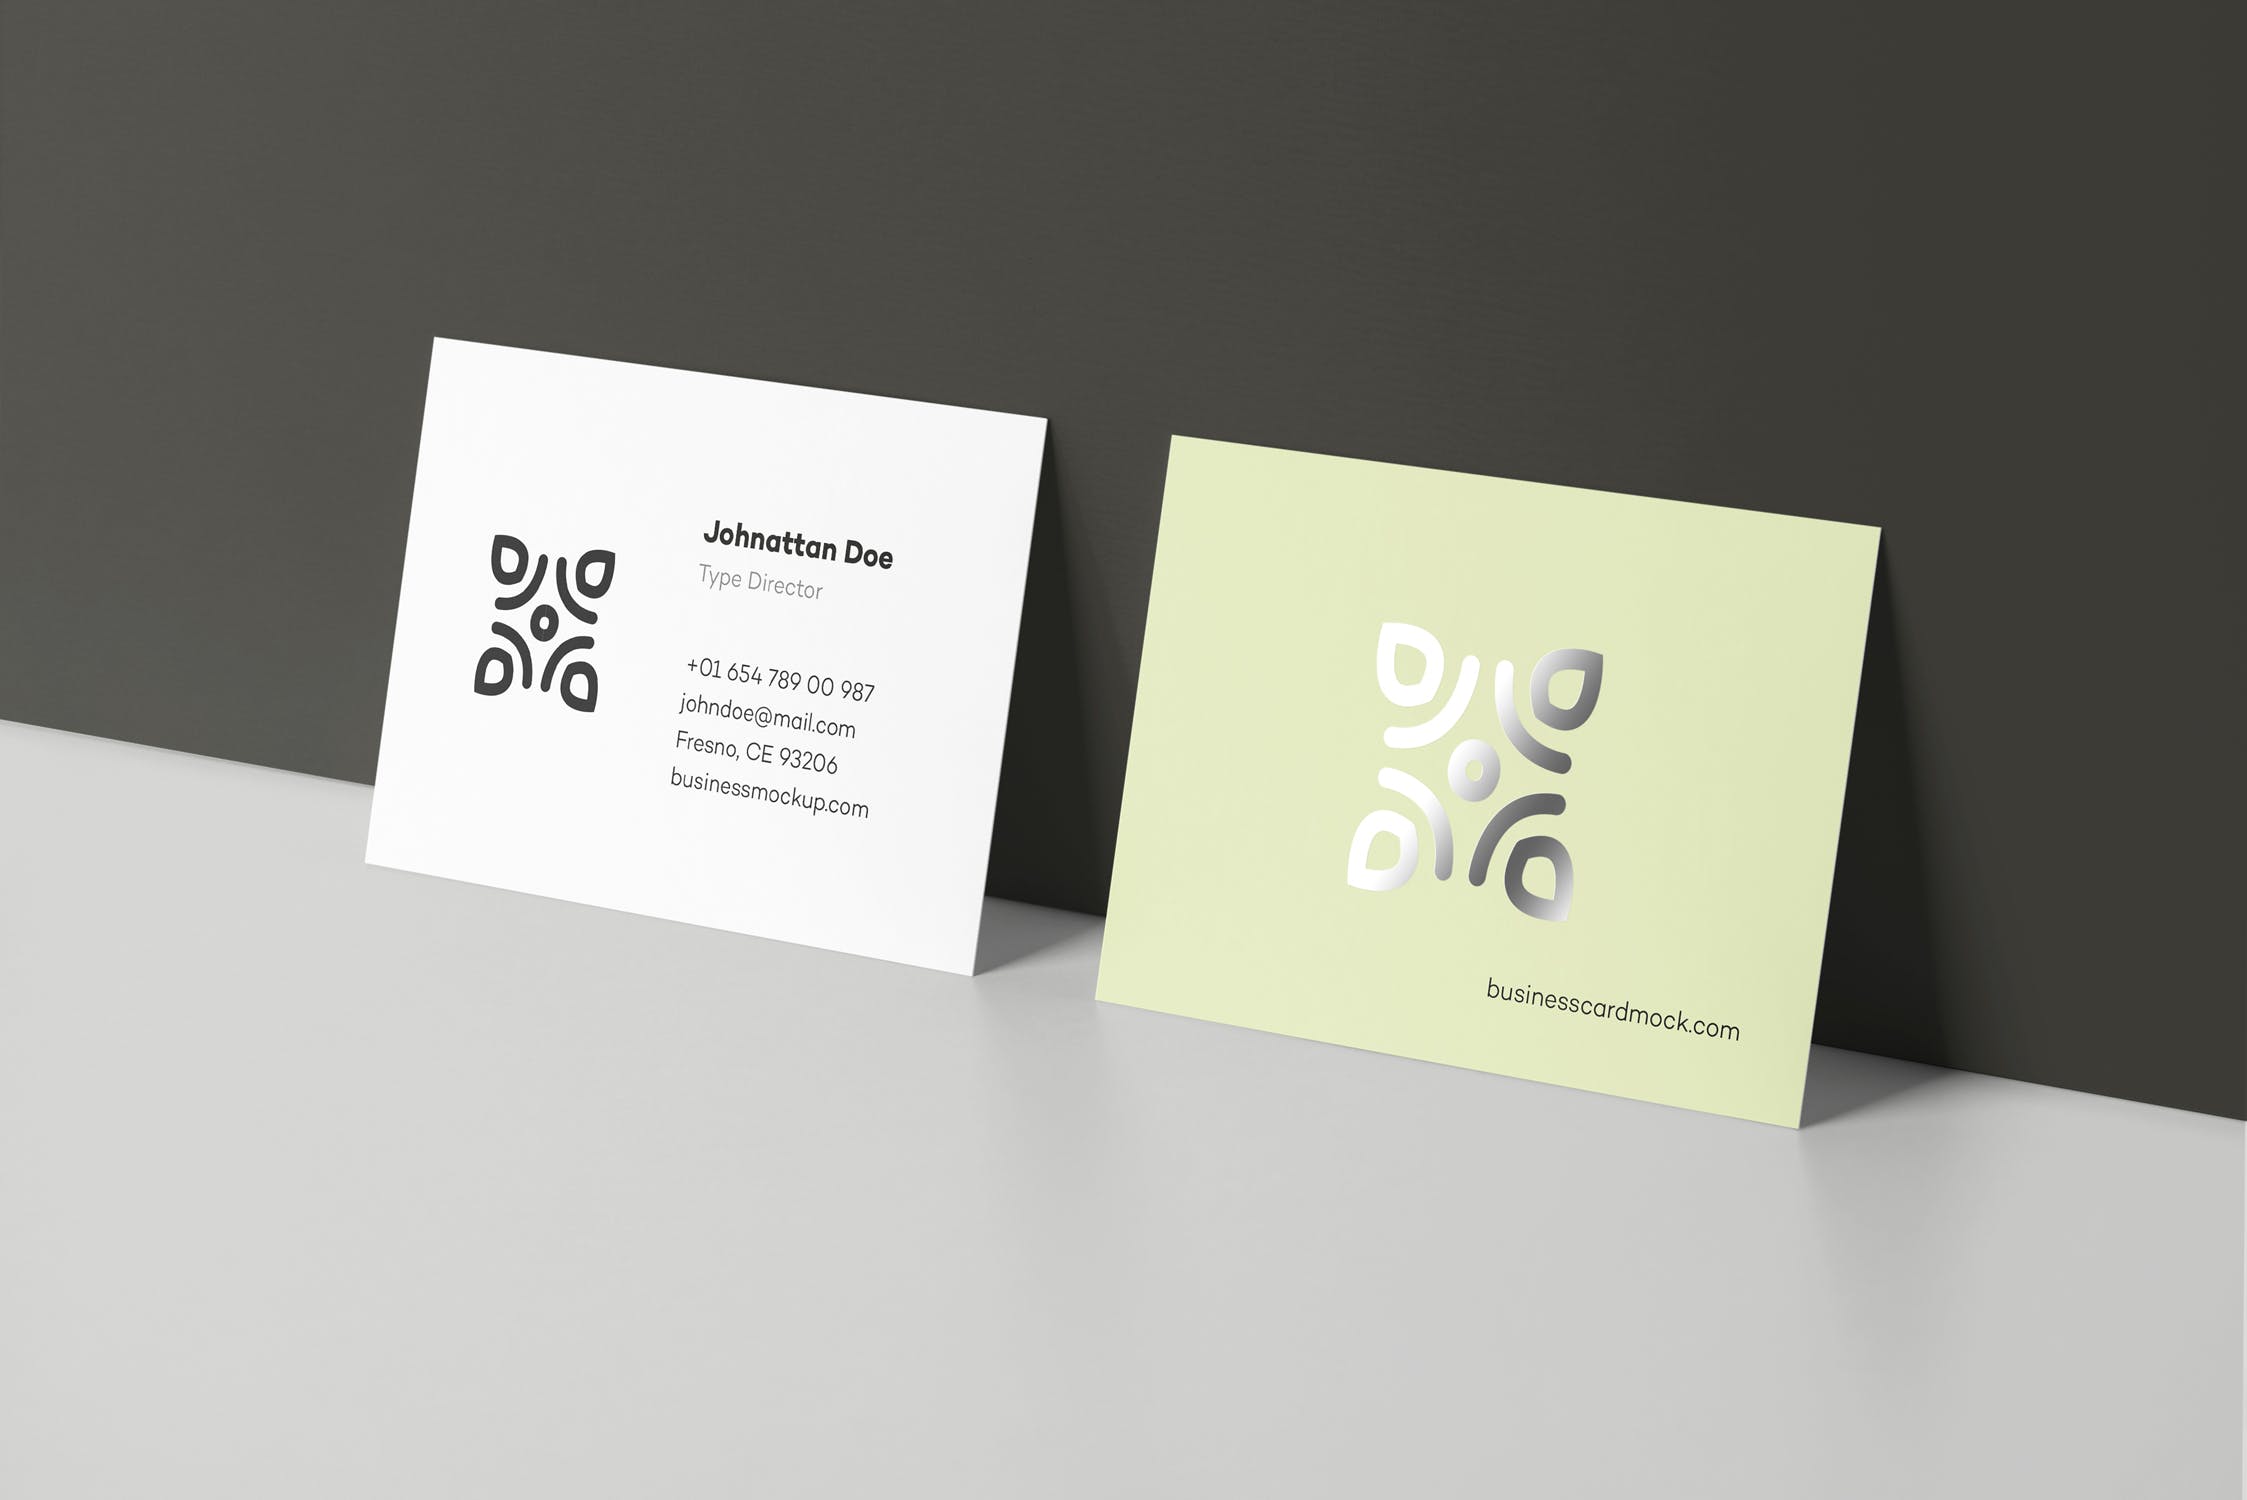 高端企业名片设计效果展示蚂蚁素材精选 Business Card Mock-up 80×55插图(8)